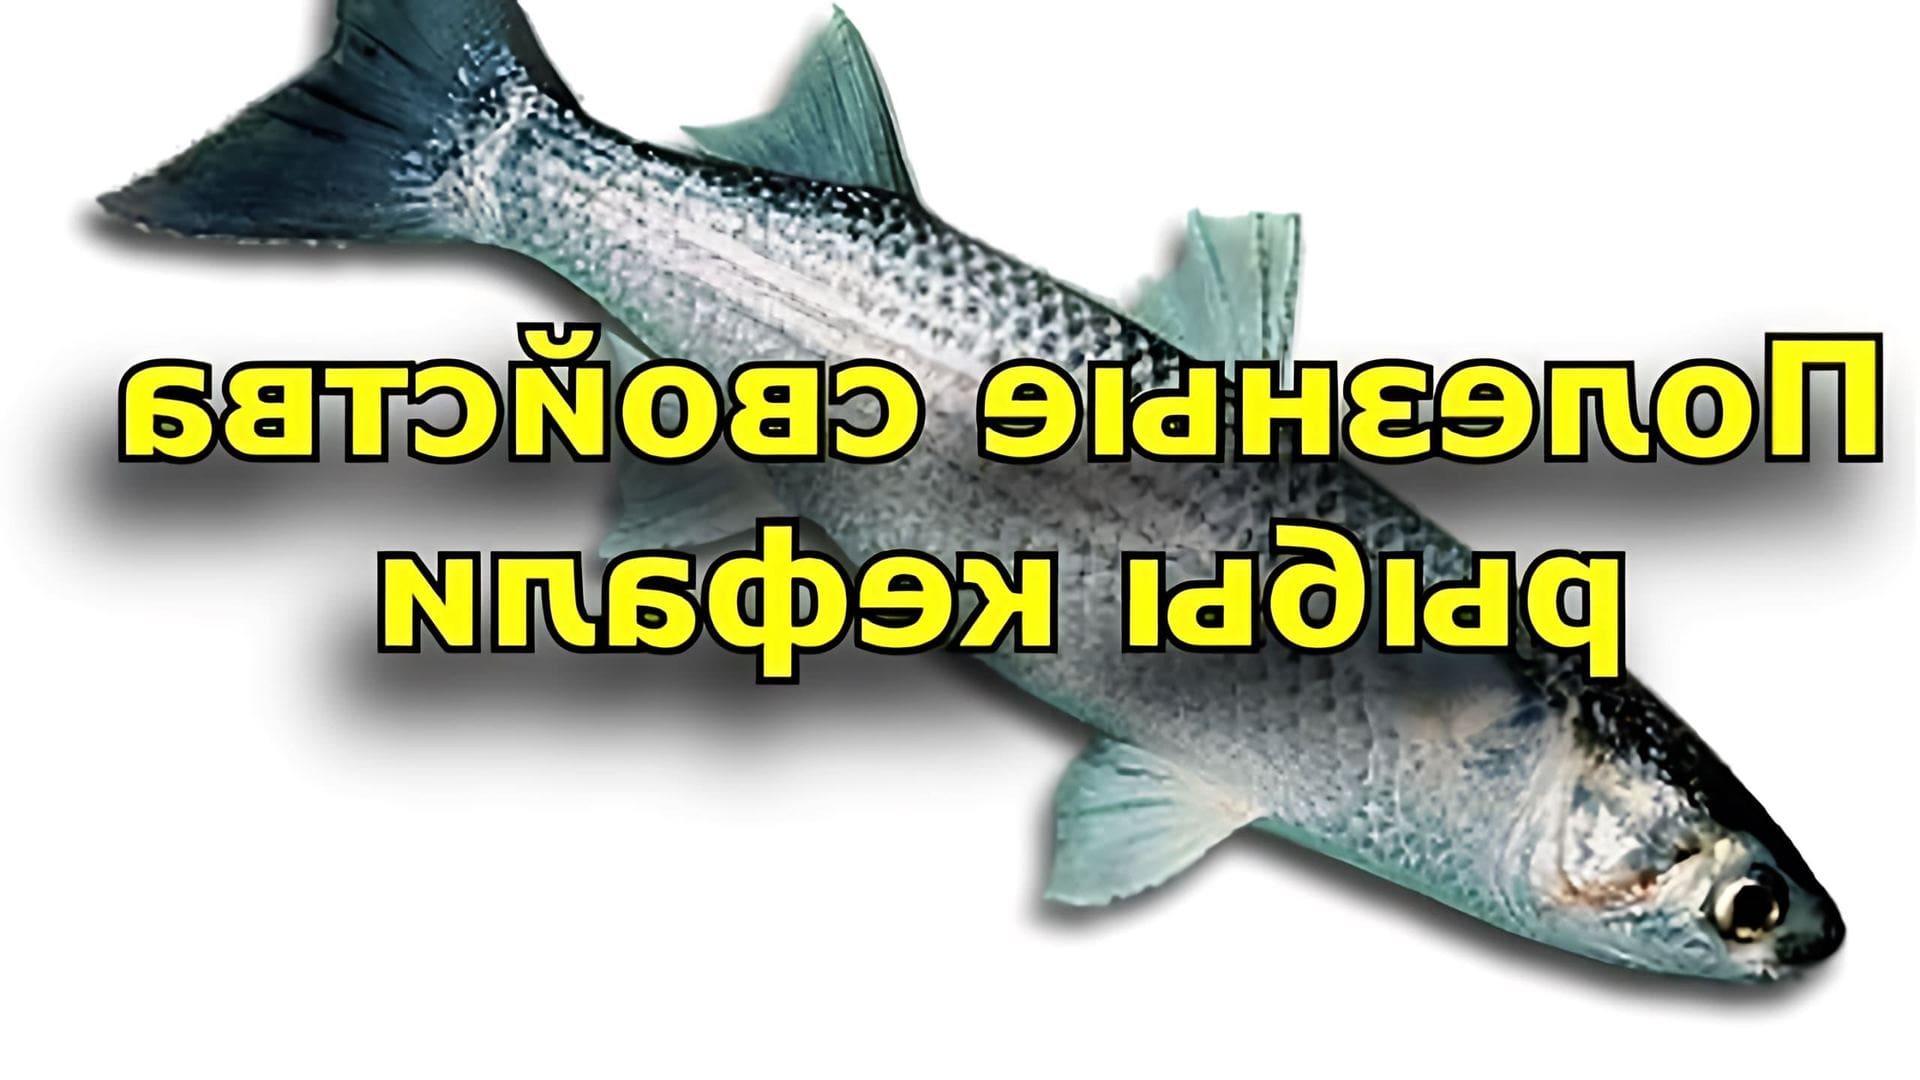 В данном видео рассказывается о полезных свойствах кефали, которая является морской рыбой семейства кифалевых